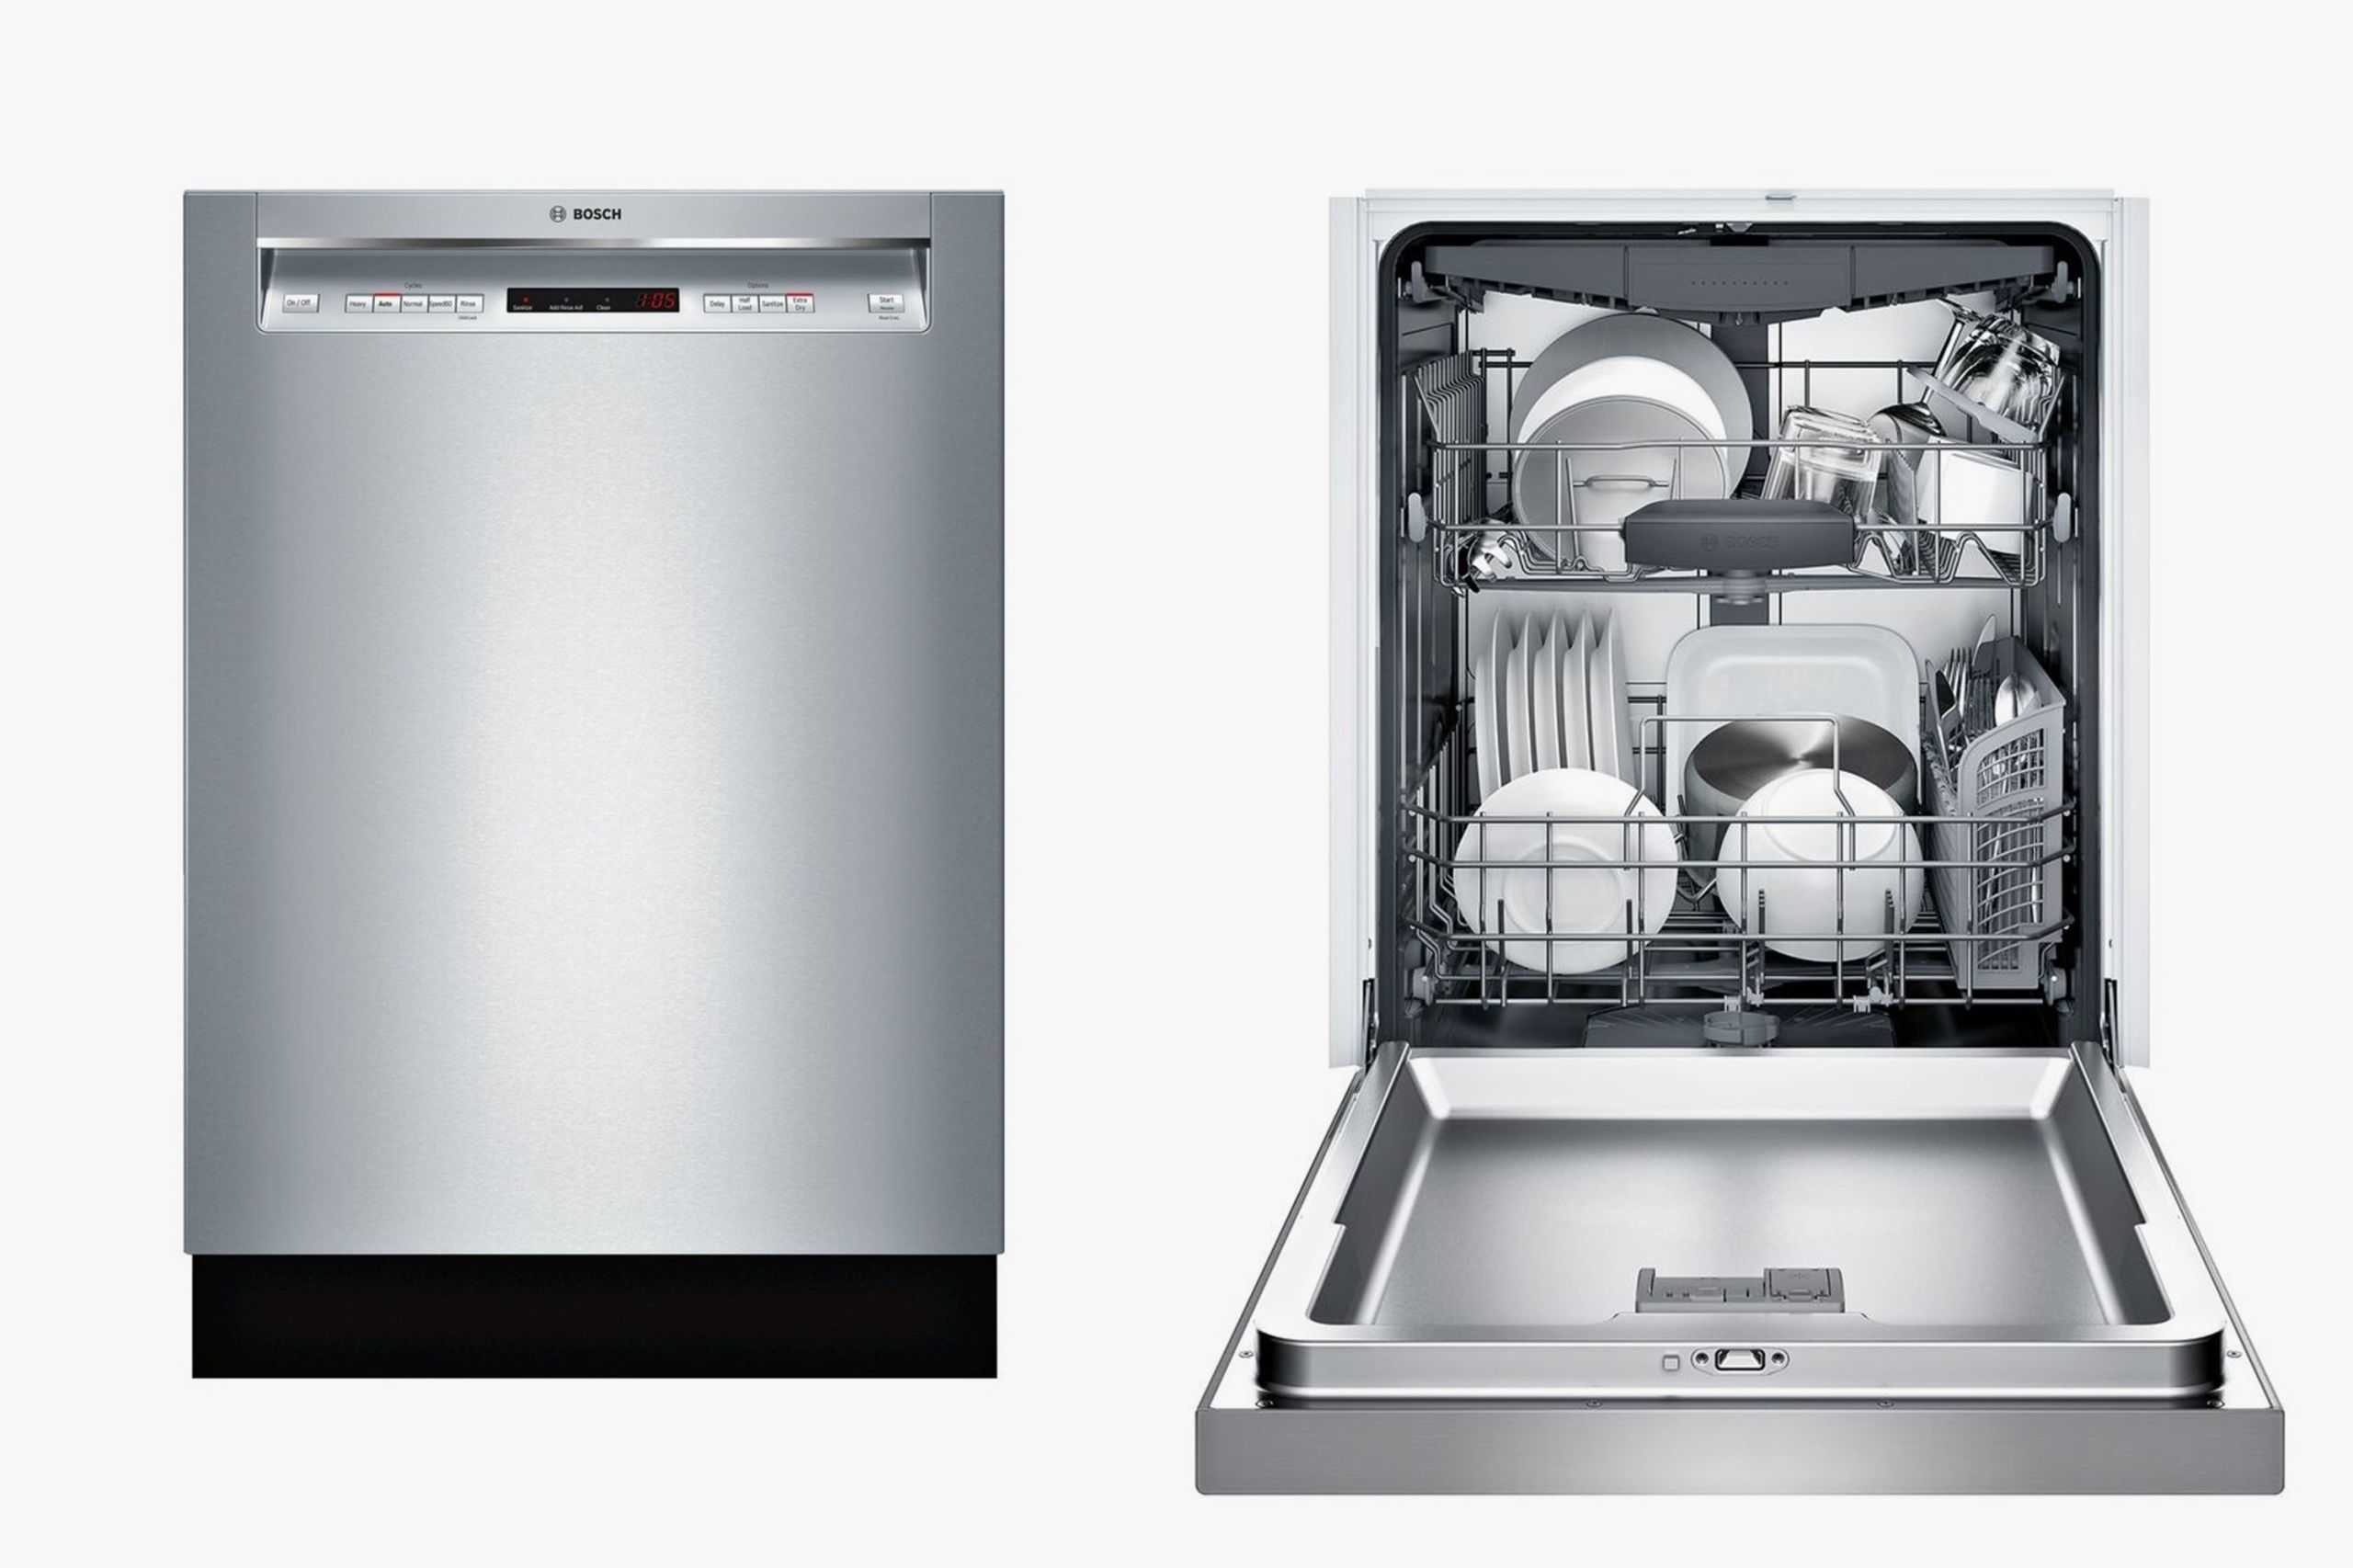 Топ-7 лучших моделей встраиваемых посудомоечных машин bosch 45 см: рейтинг 2021 года, плюсы и минусы, технические характеристики и отзывы